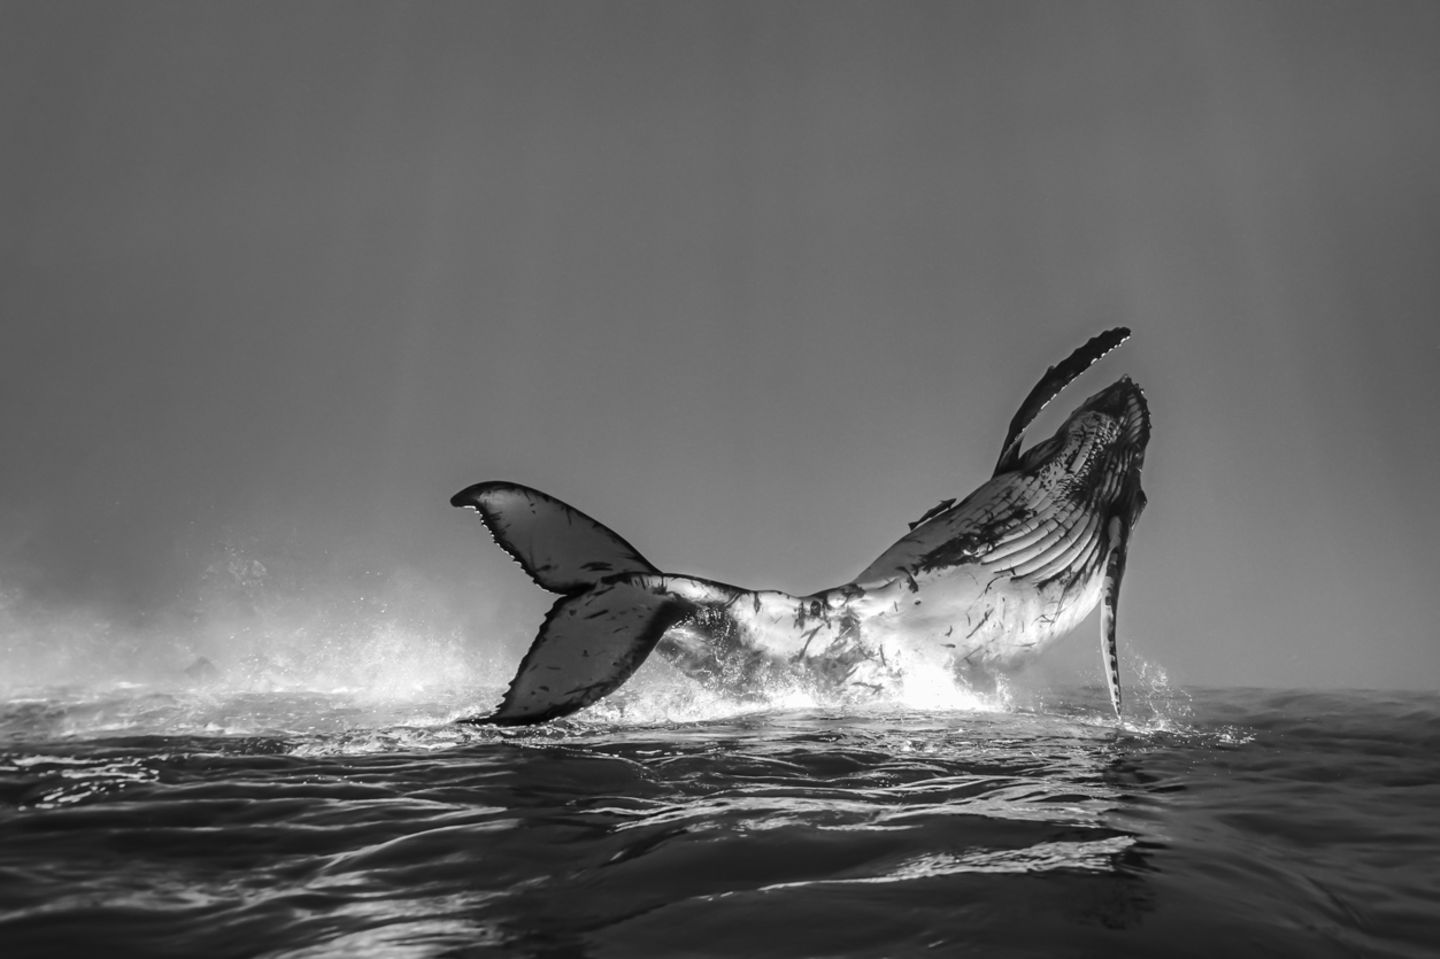 Fotowettbewerb: Preisgekrönte Ozean-Fotografie - die besten Bilder des Jahres - Bild 8